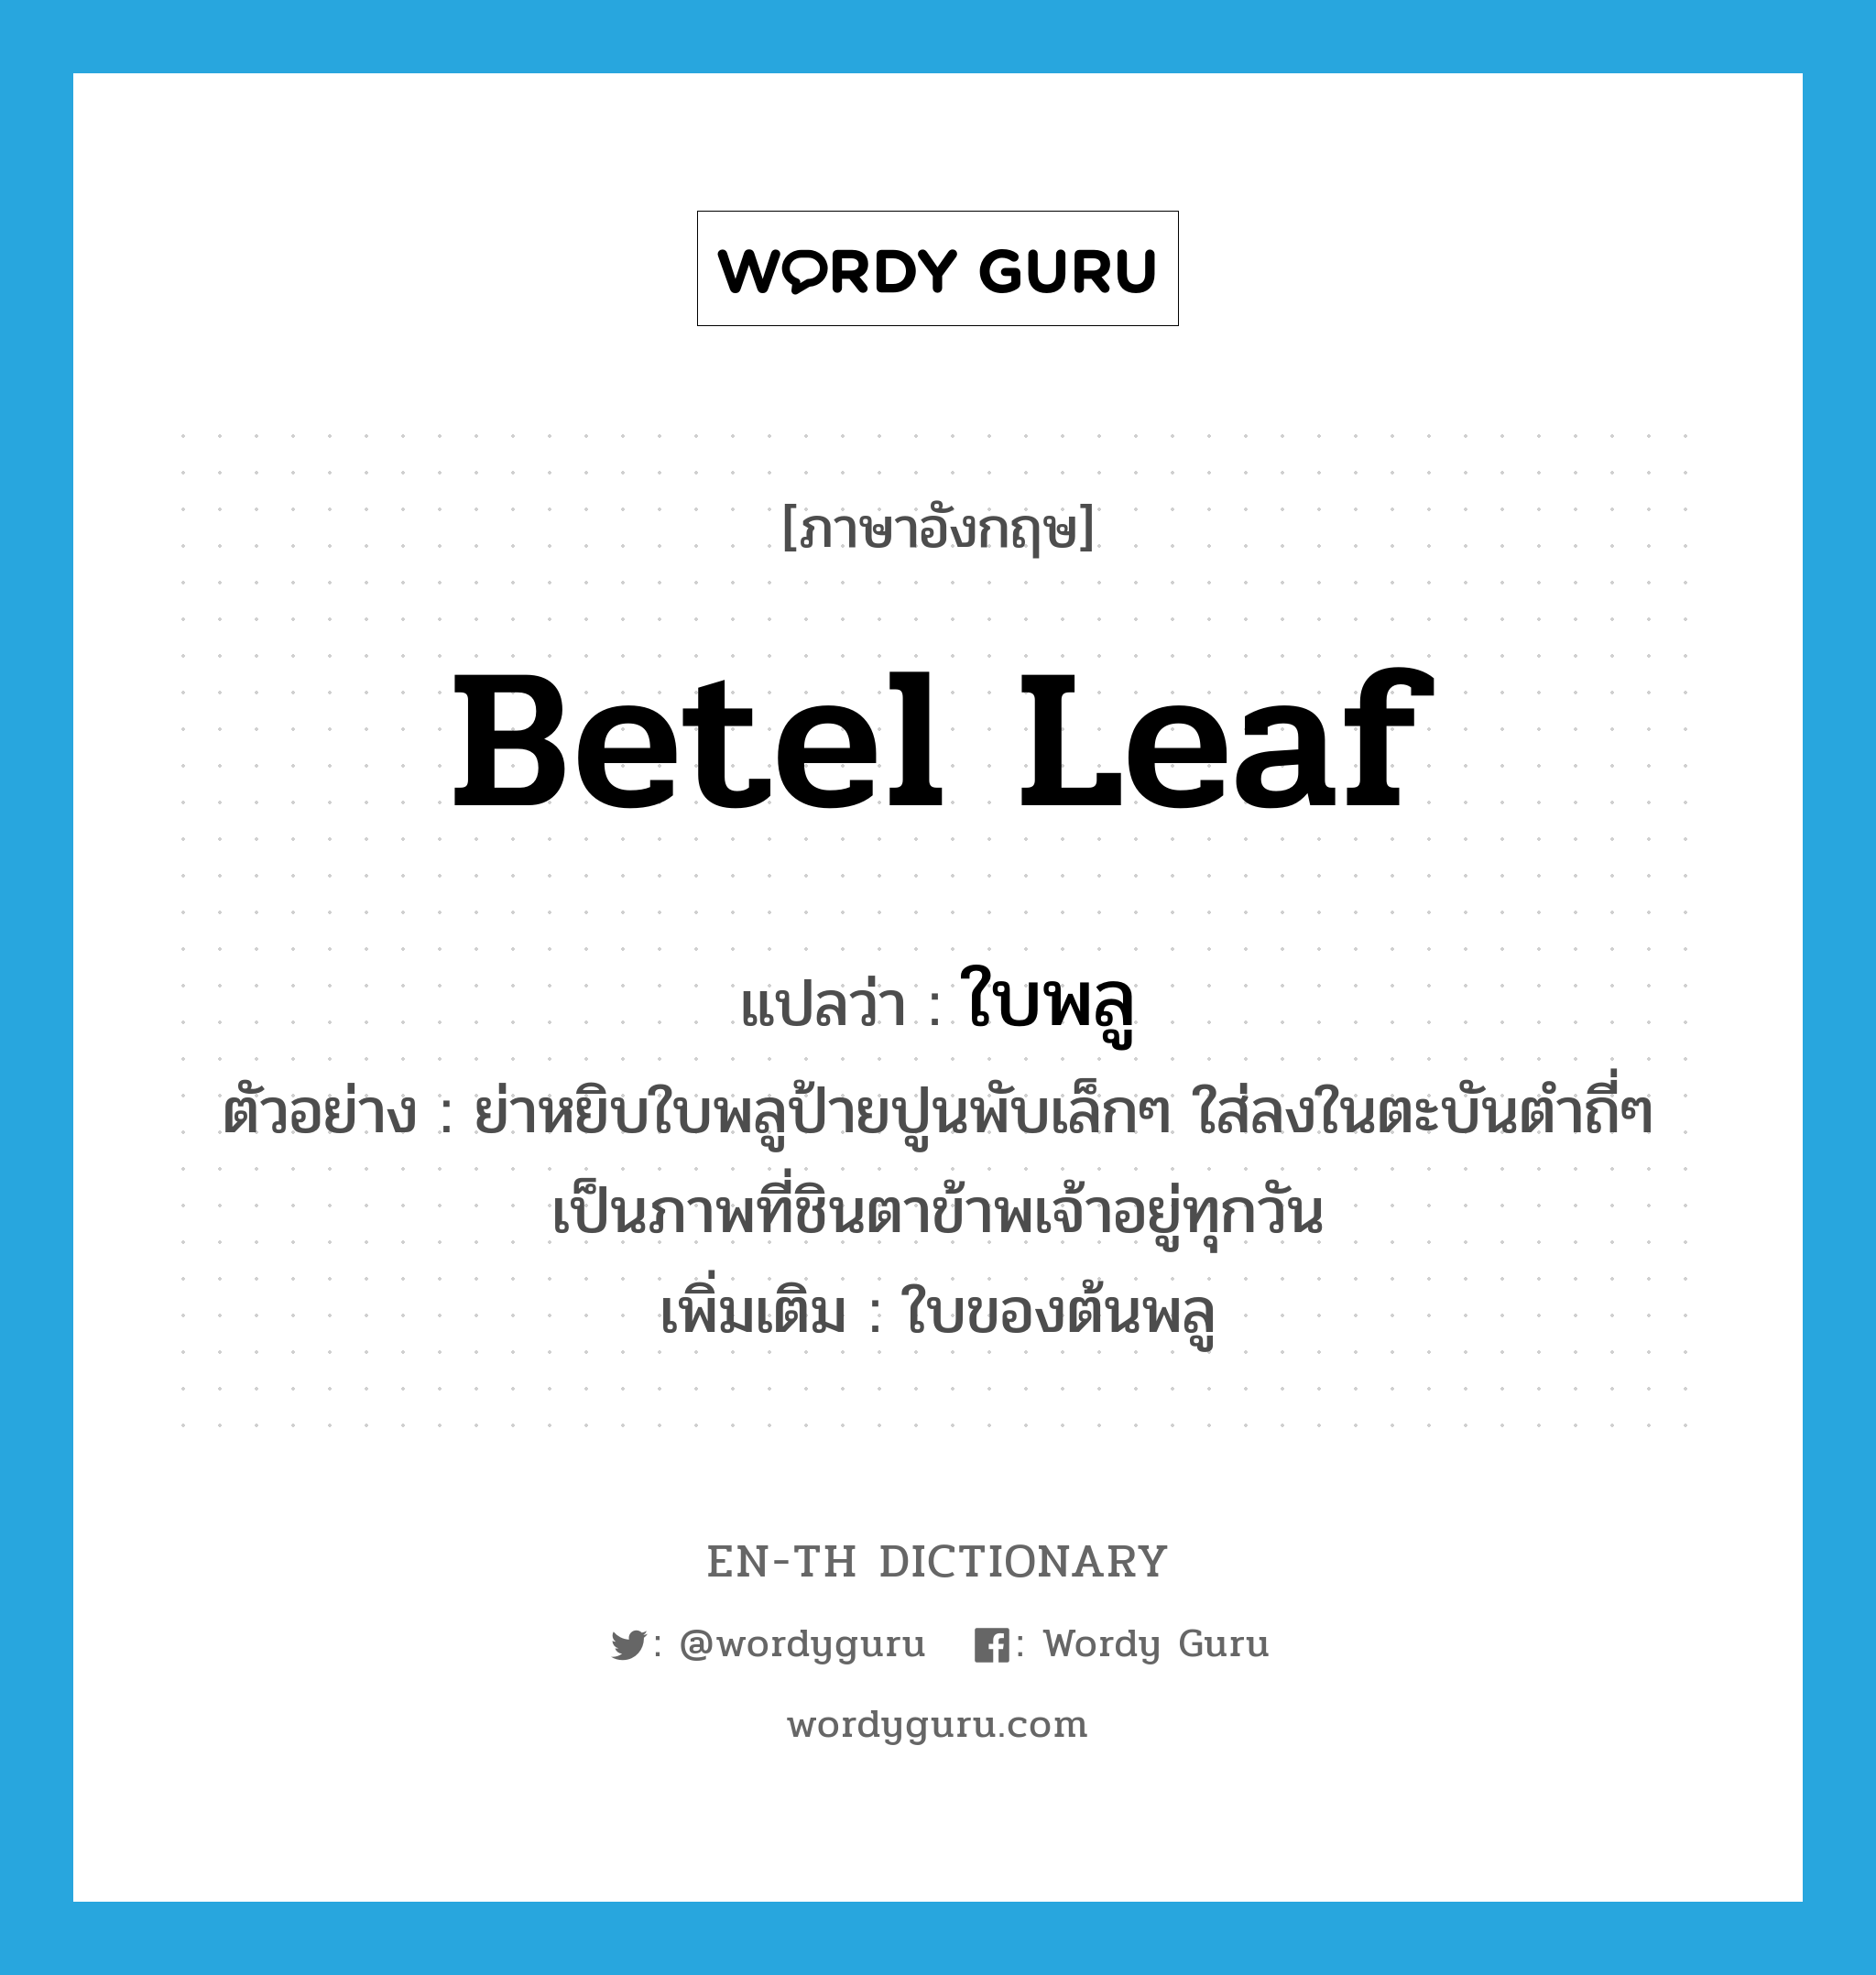 betel leaf แปลว่า?, คำศัพท์ภาษาอังกฤษ betel leaf แปลว่า ใบพลู ประเภท N ตัวอย่าง ย่าหยิบใบพลูป้ายปูนพับเล็กๆ ใส่ลงในตะบันตำถี่ๆ เป็นภาพที่ชินตาข้าพเจ้าอยู่ทุกวัน เพิ่มเติม ใบของต้นพลู หมวด N